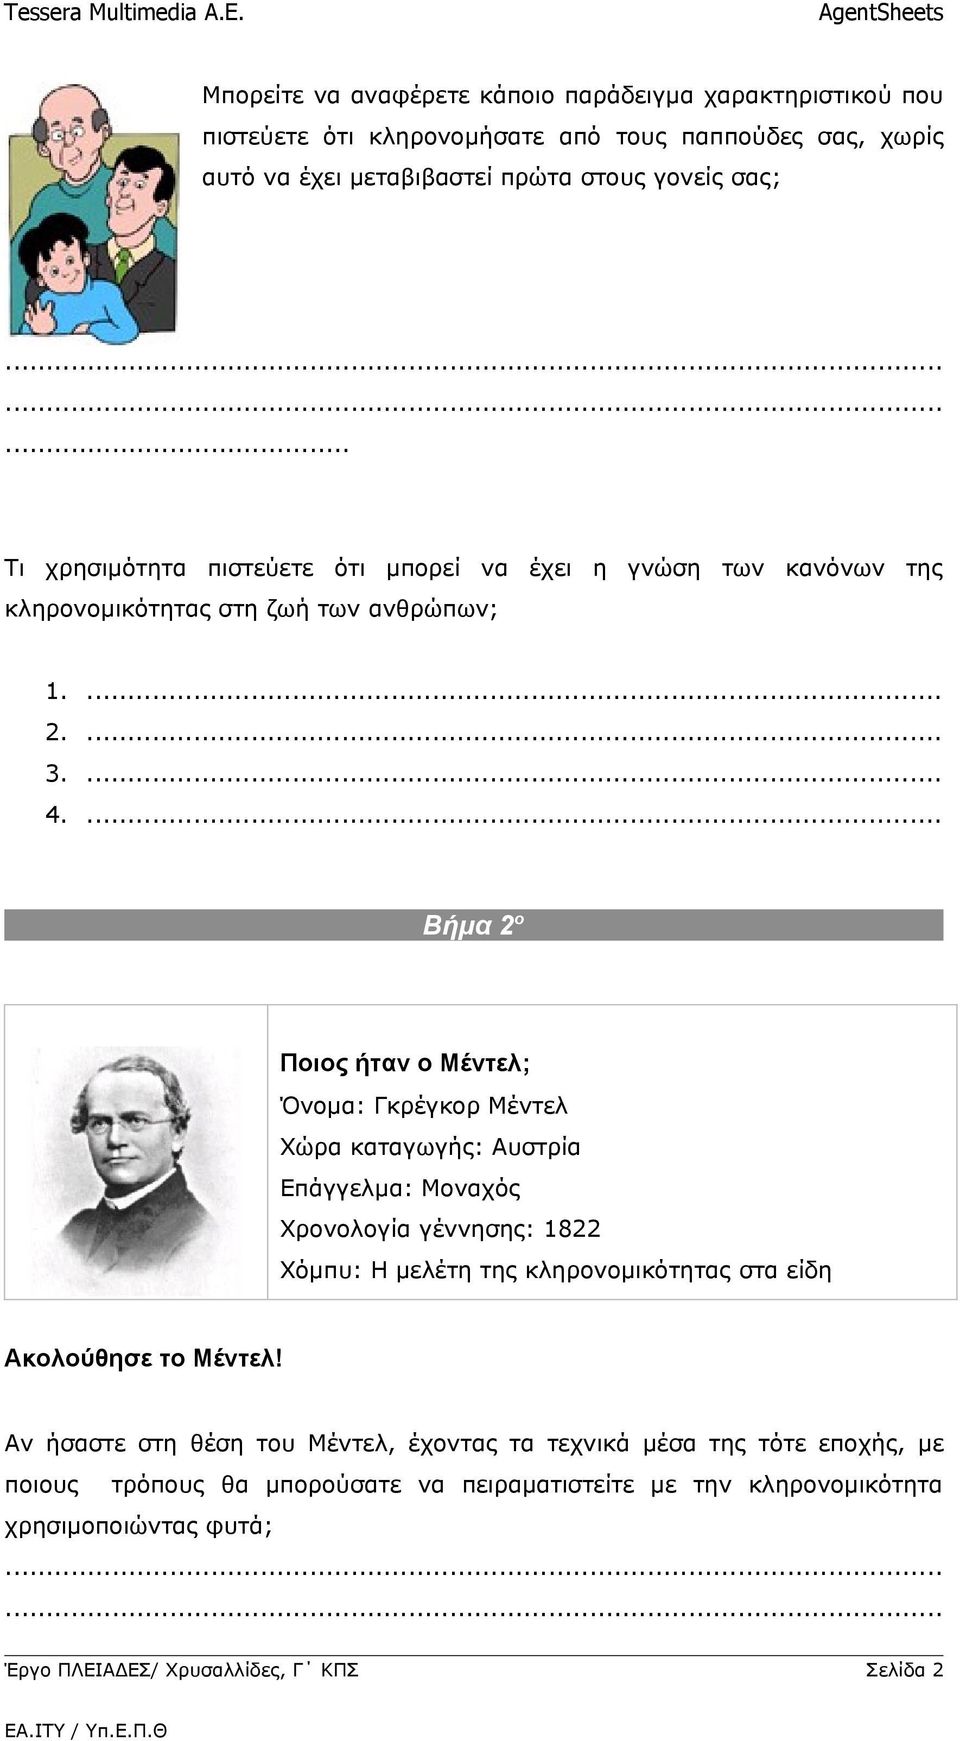 ... Βήμα 2ο Ποιος ήταν ο Μέντελ; Όνομα: Γκρέγκορ Μέντελ Χώρα καταγωγής: Αυστρία Επάγγελμα: Μοναχός Χρονολογία γέννησης: 1822 Χόμπυ: Η μελέτη της κληρονομικότητας στα